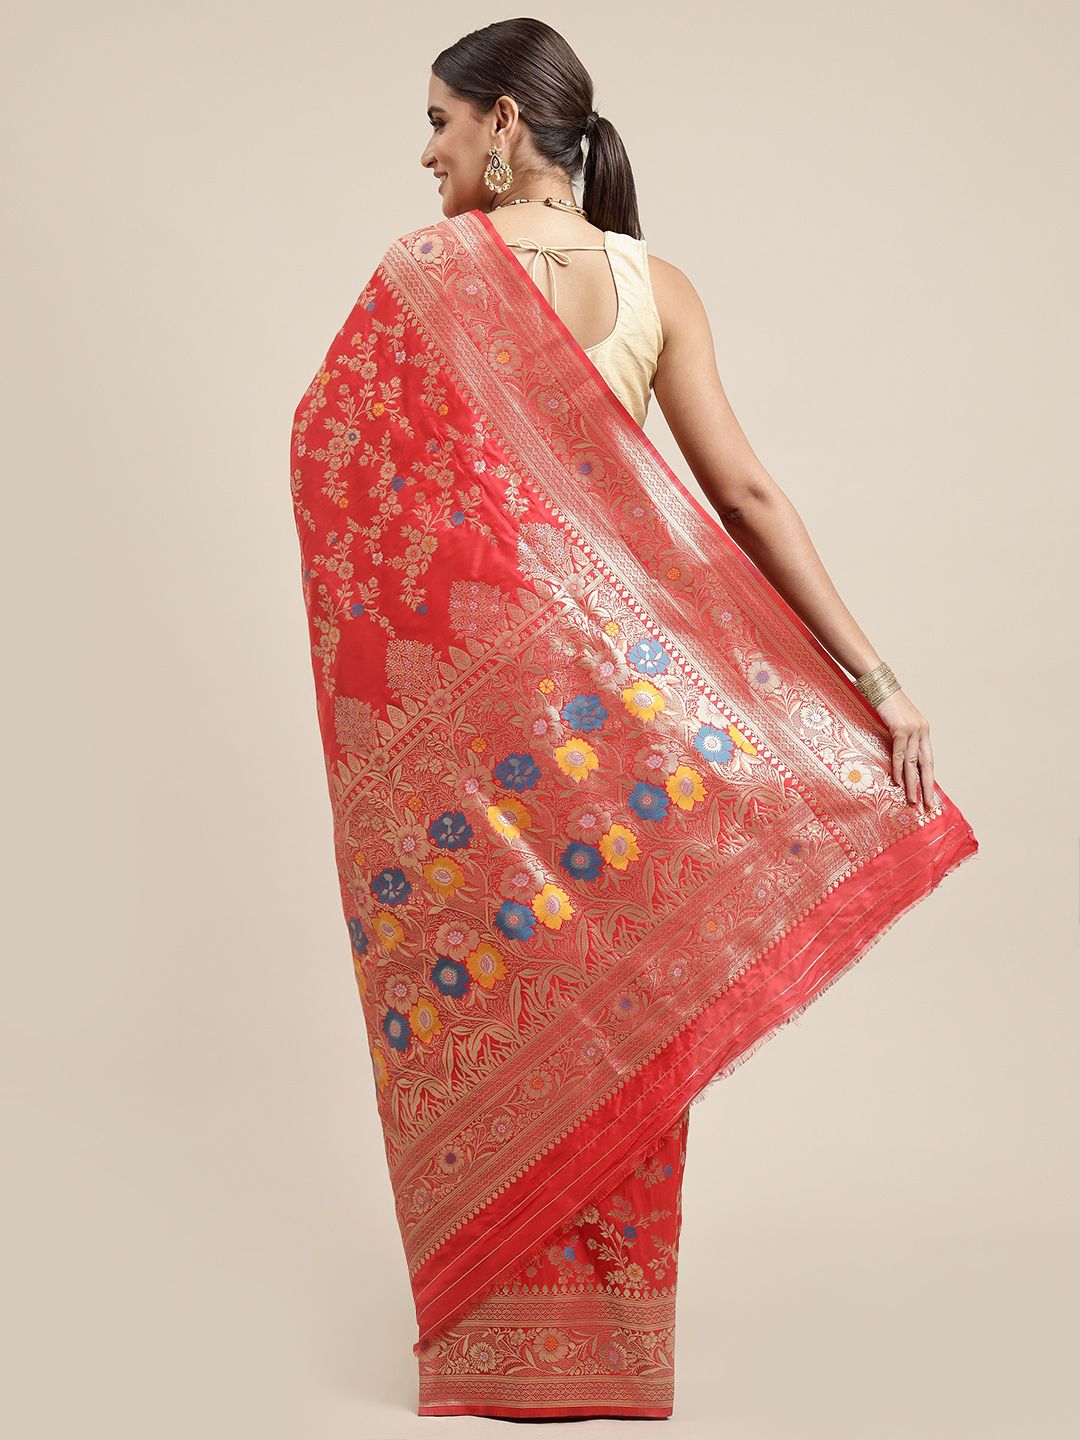 Red Color Soft Silk Banarasi Saree Gorgeous Meenakari Design And Pallu